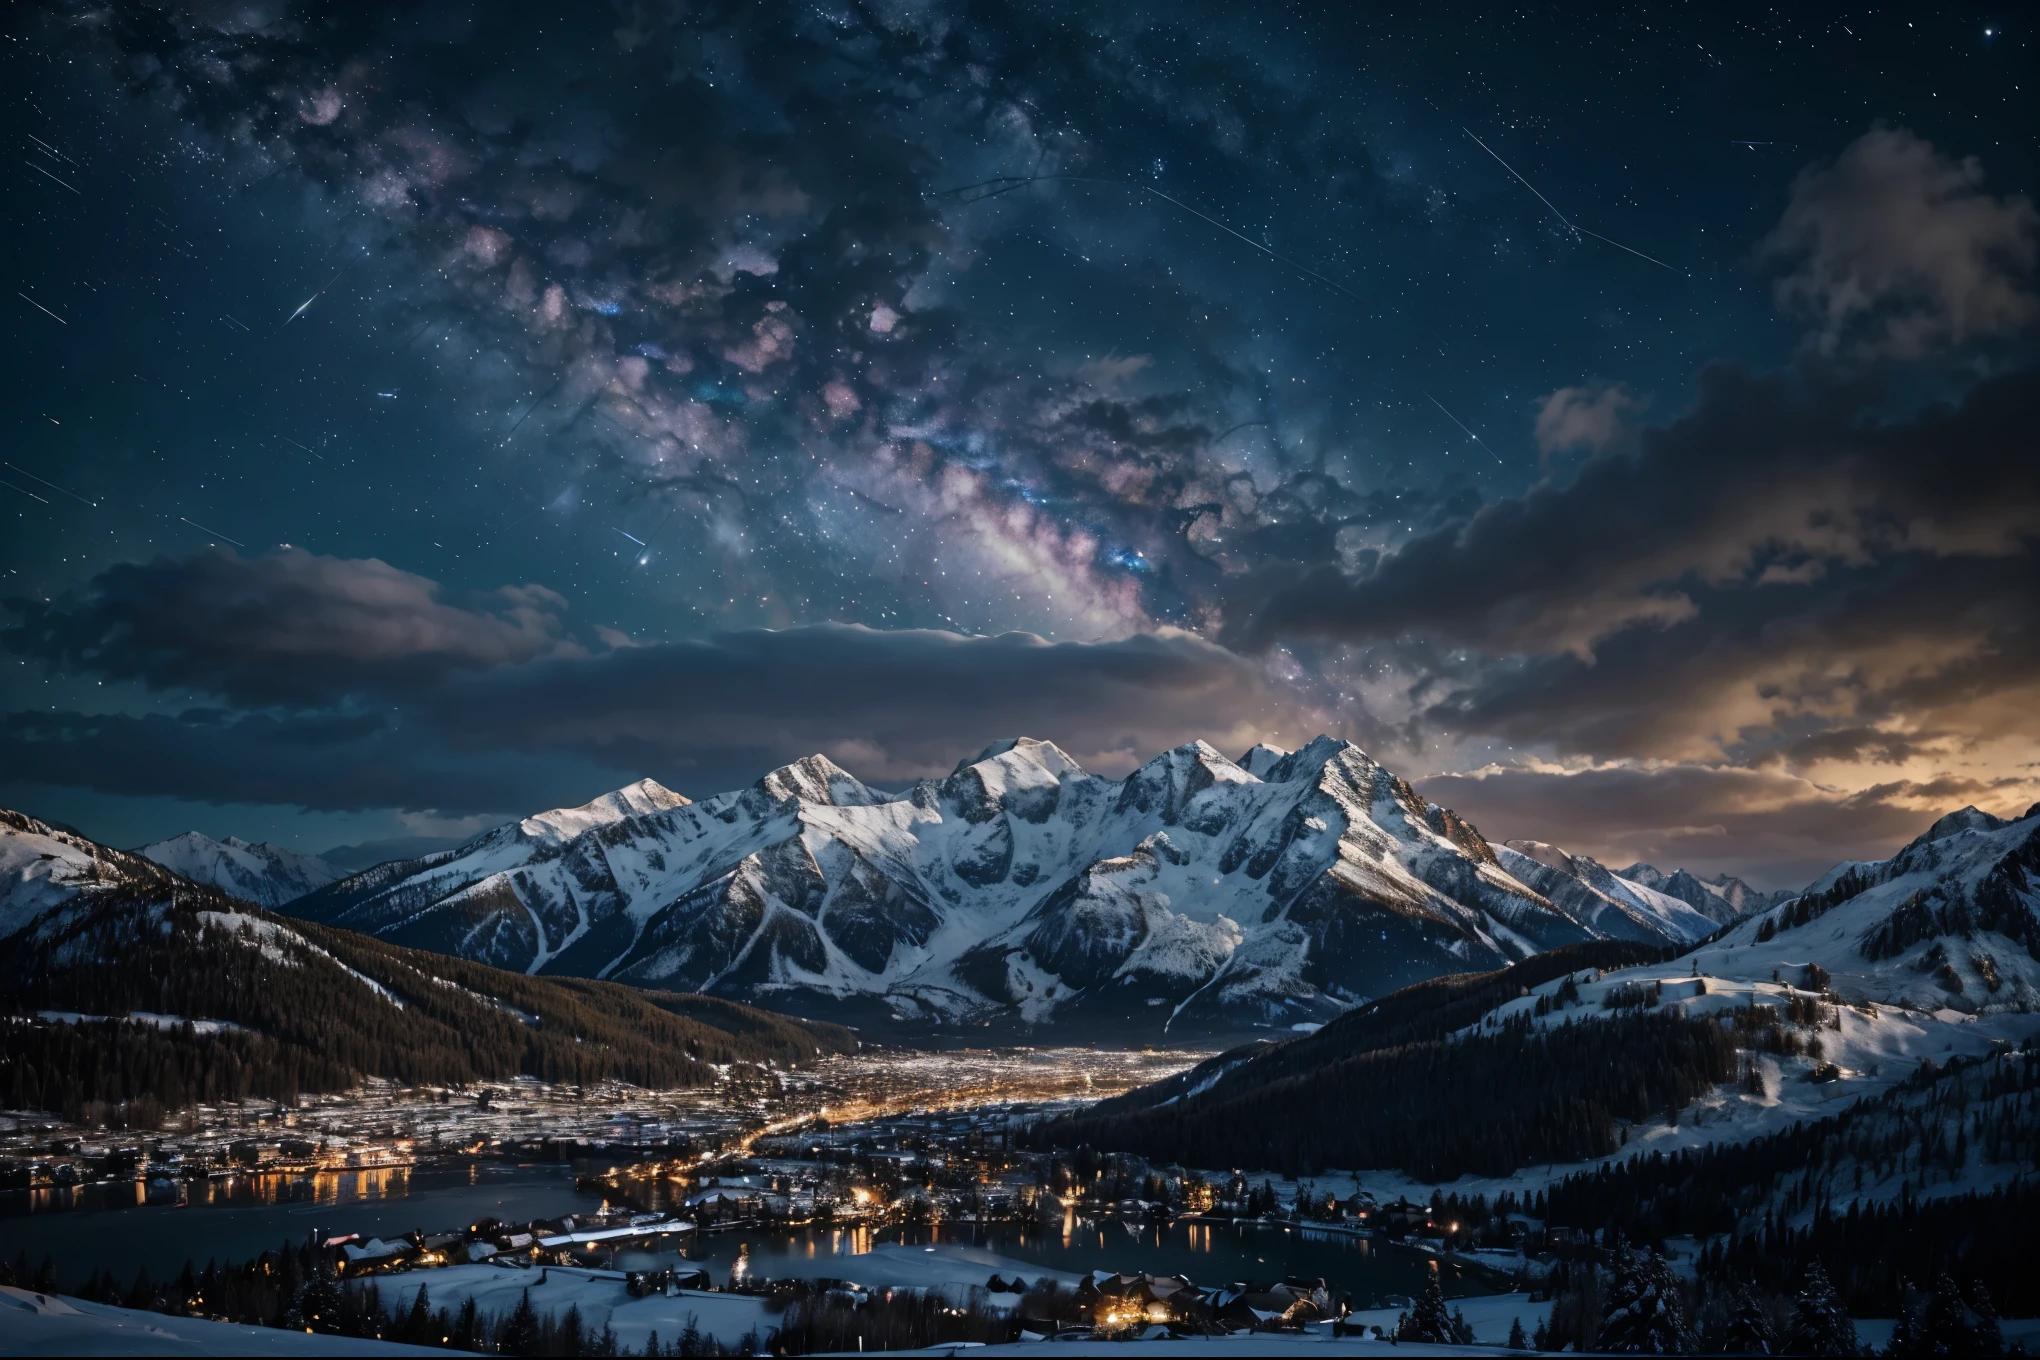 Фон, много высоких гор, Много облаков, зимнее небо, видя созвездия, галактика, Млечный Путь, красивая зимняя ночь с обоями маленького города, красивое озеро, высокая детализация, реалистичное 8к Full HD.
